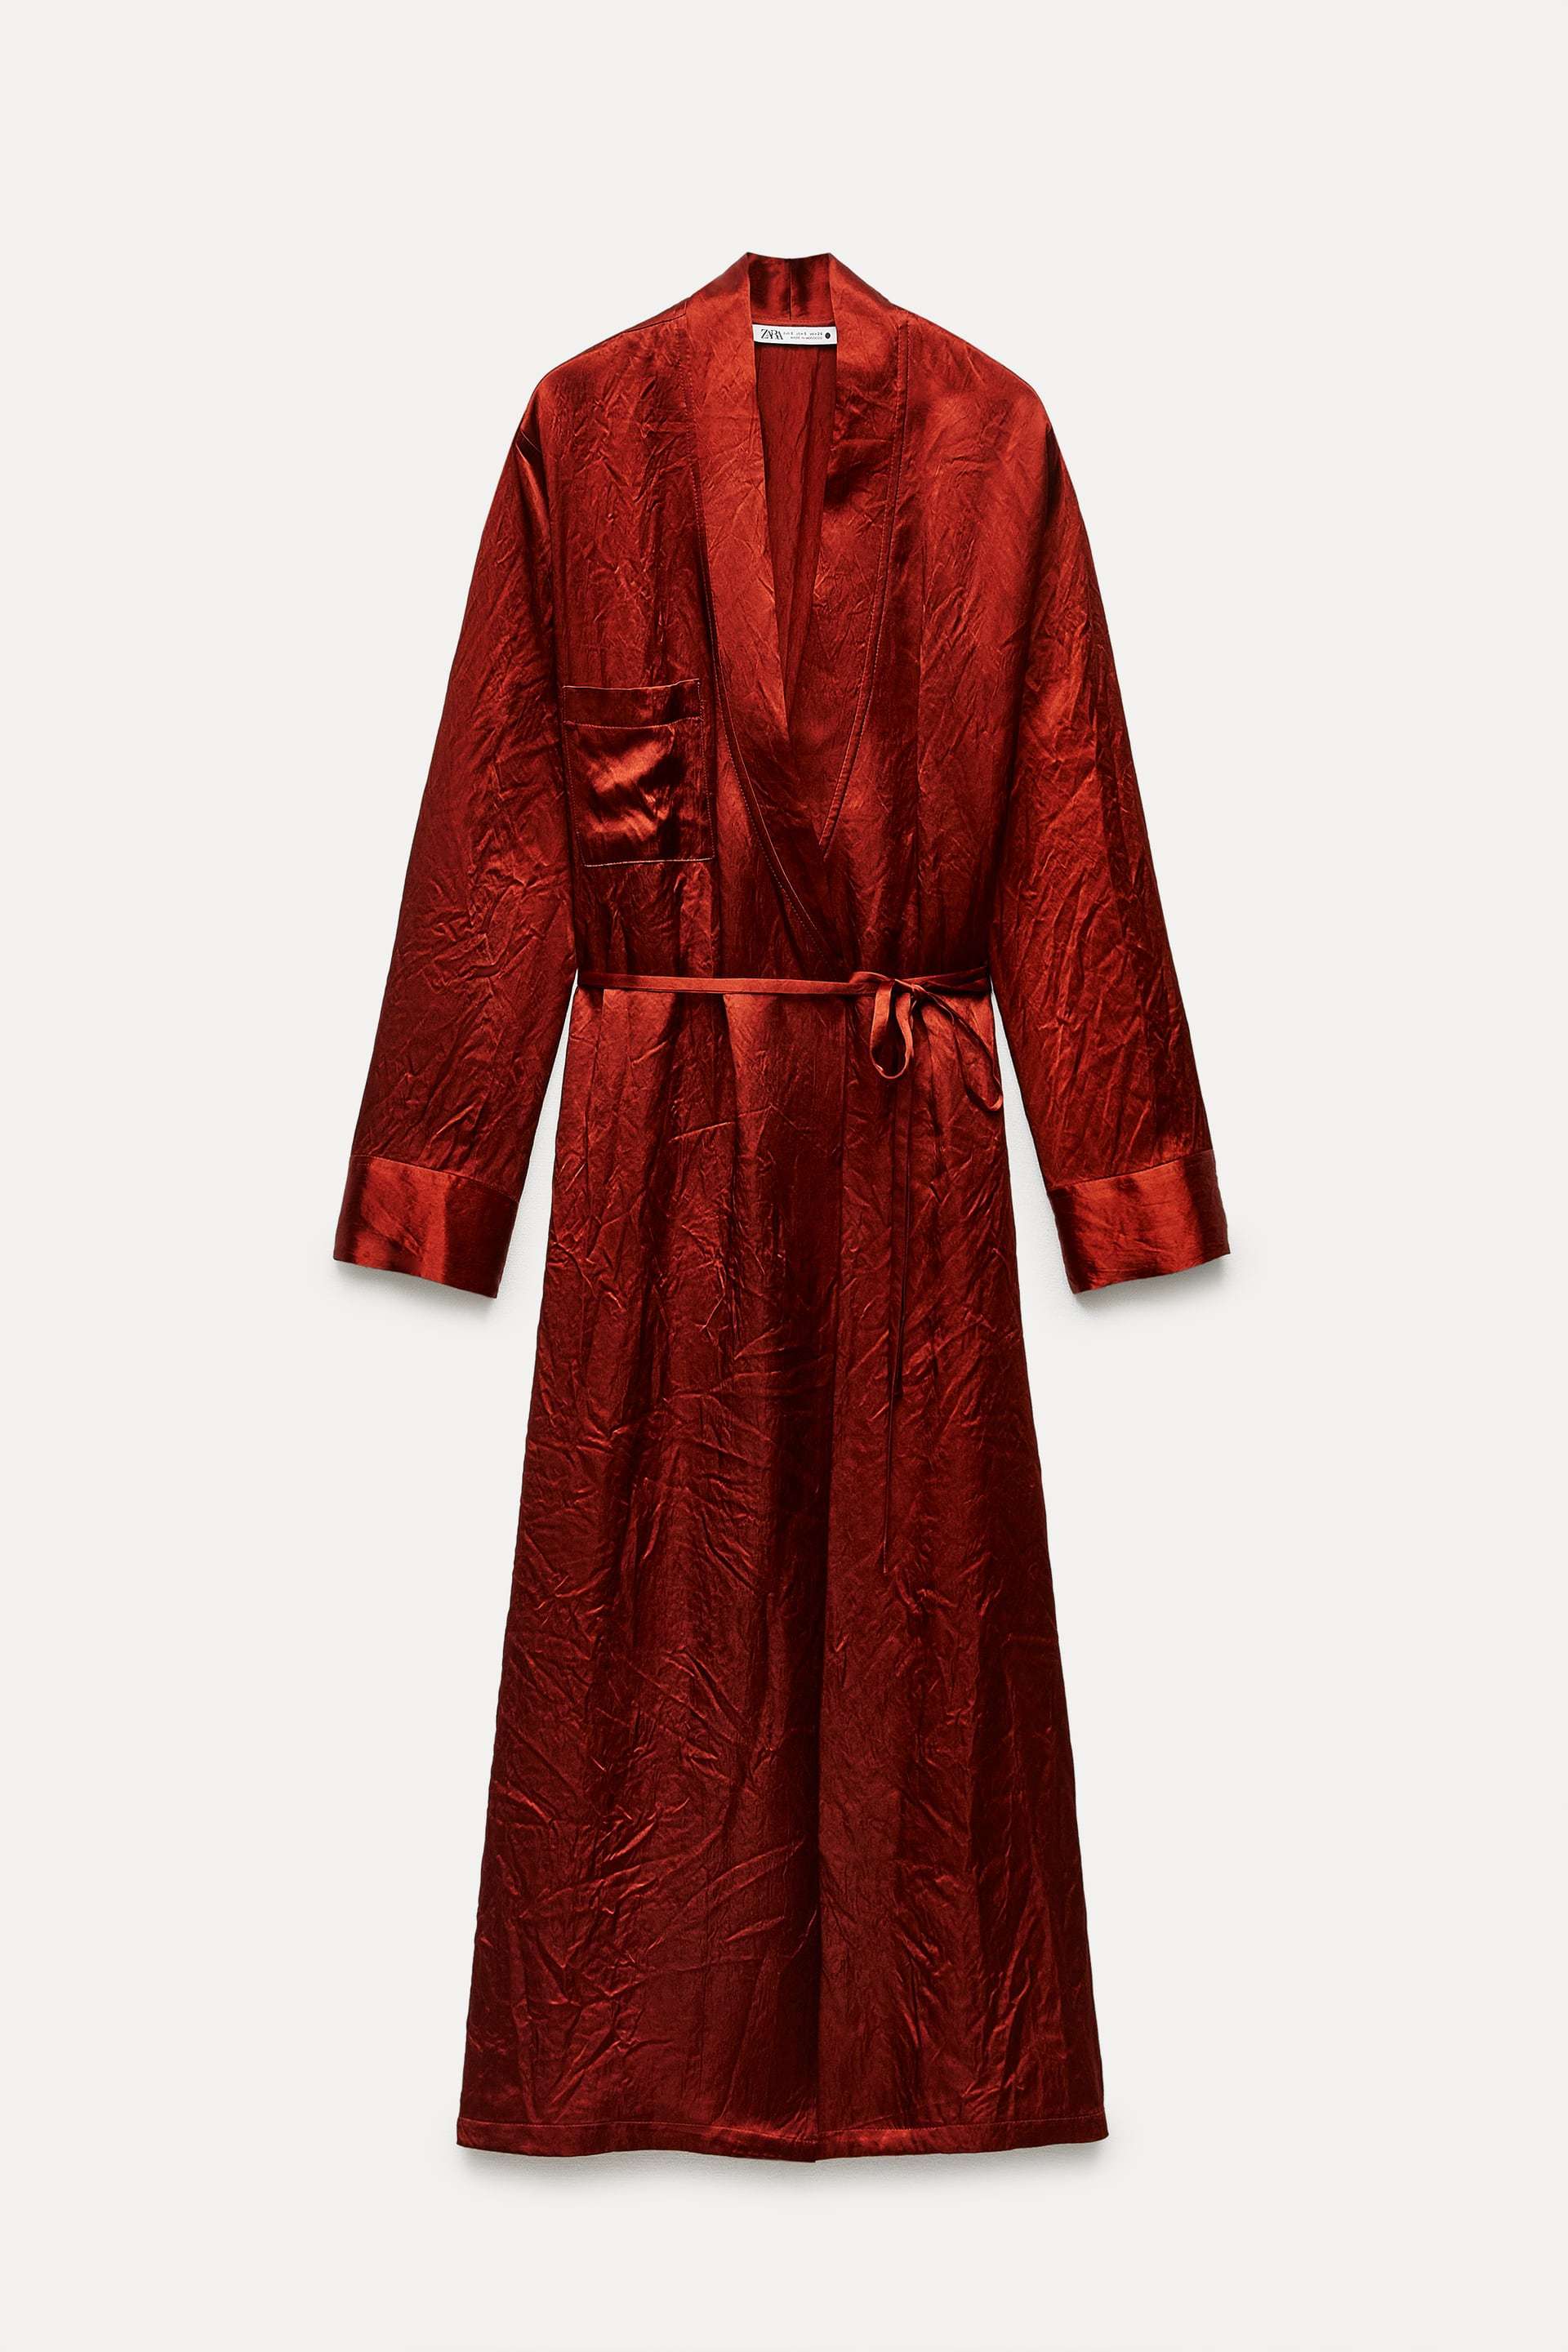 Vestido batín satinado de Zara (69,95 euros).